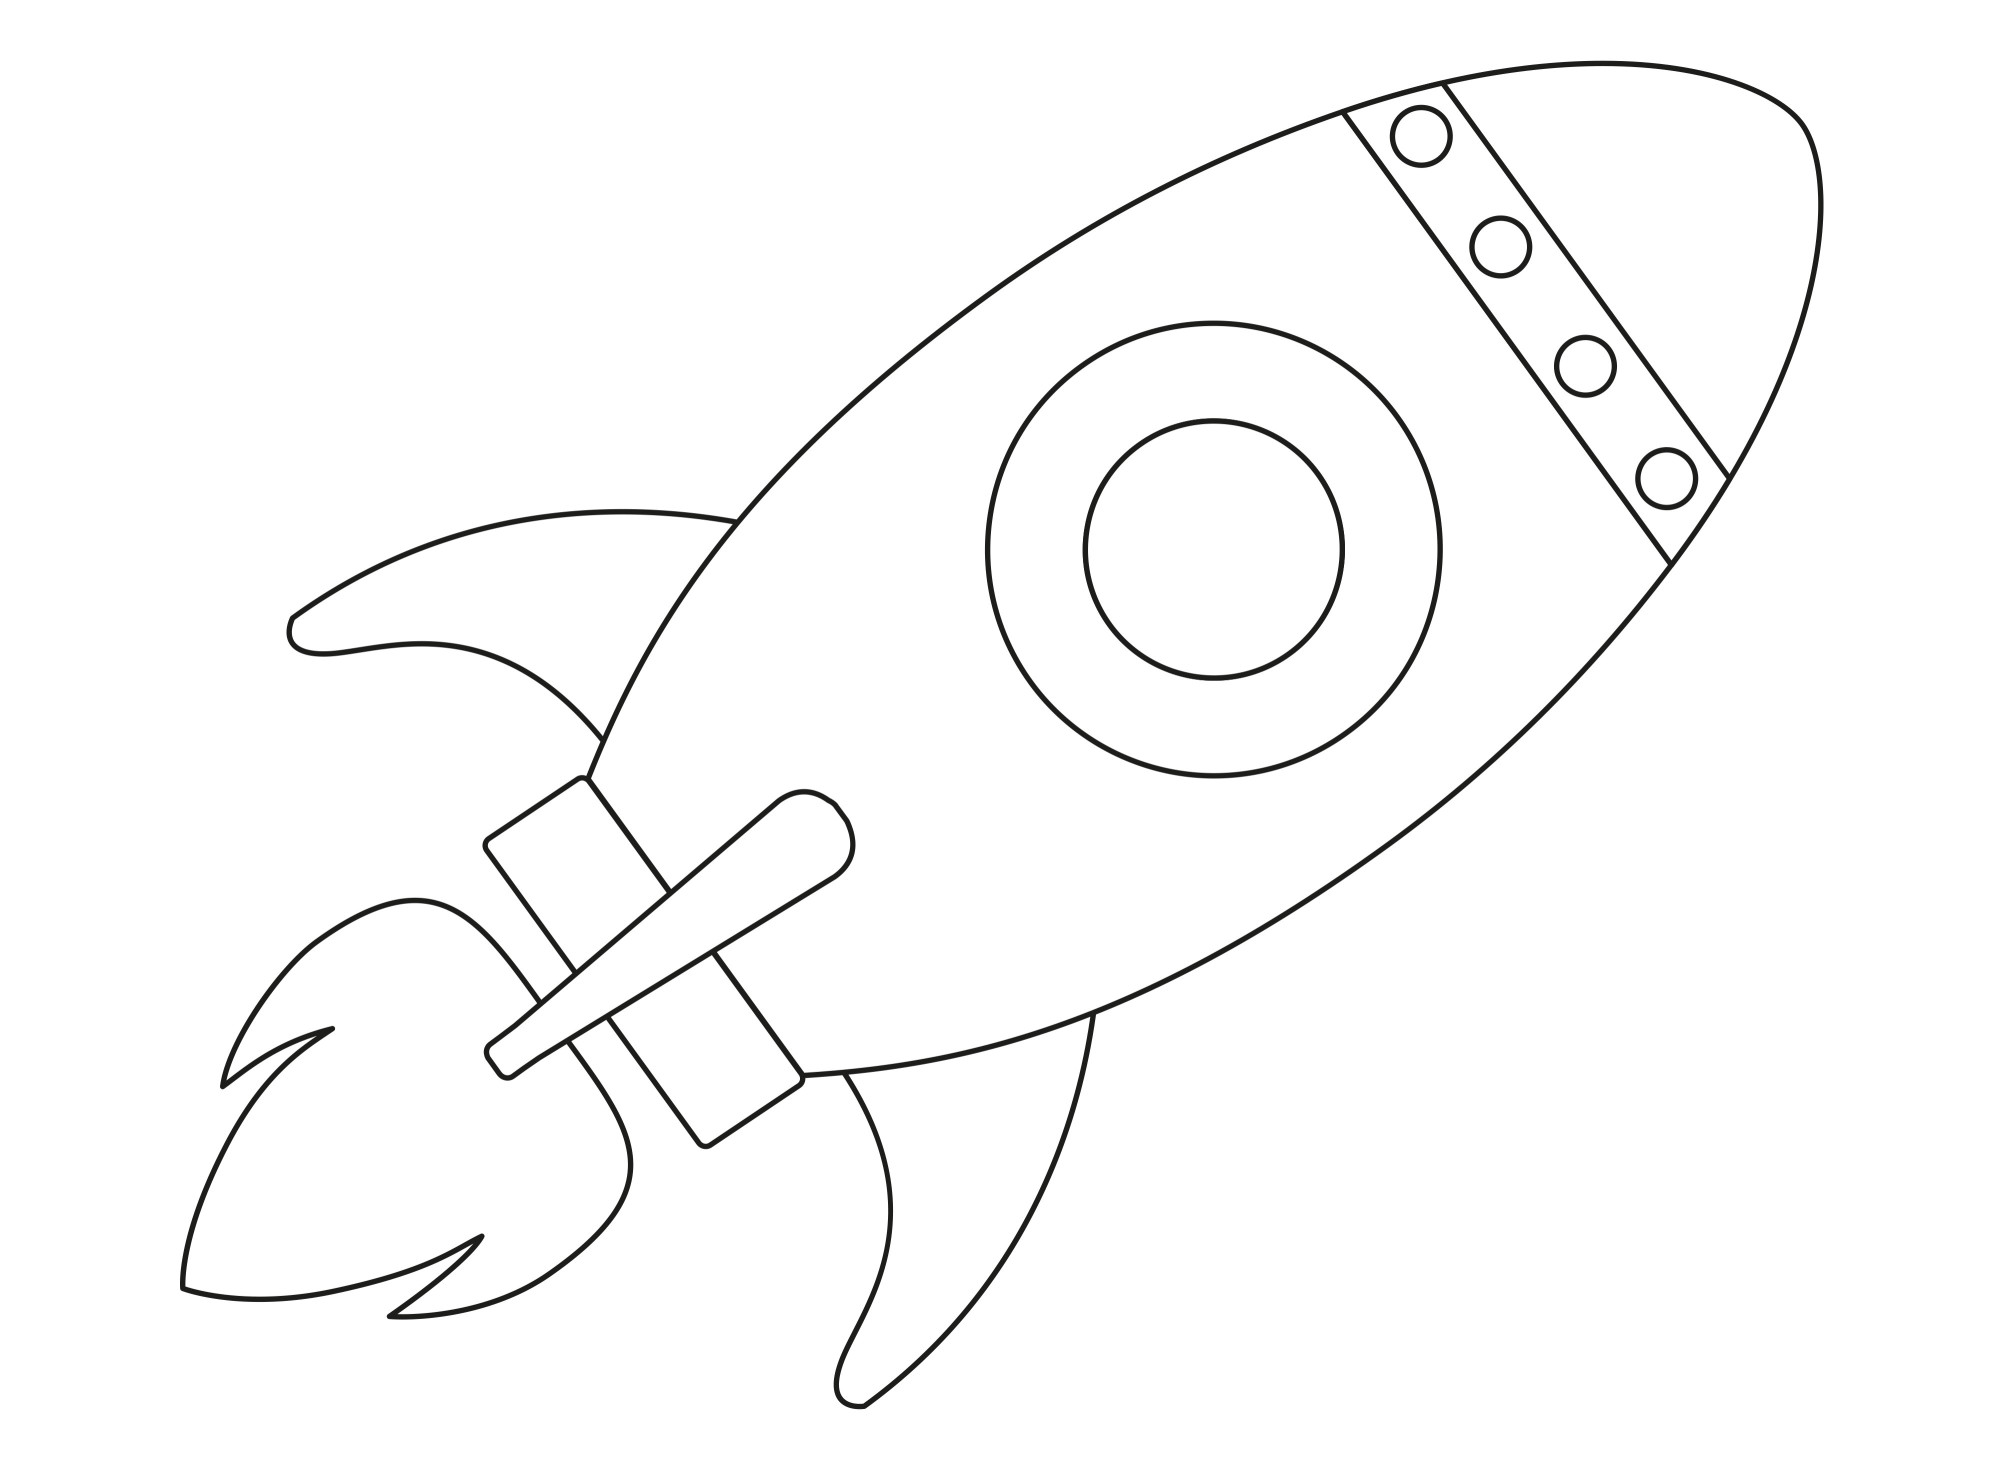 Раскраска для детей: игрушка космическая ракета с иллюминатором